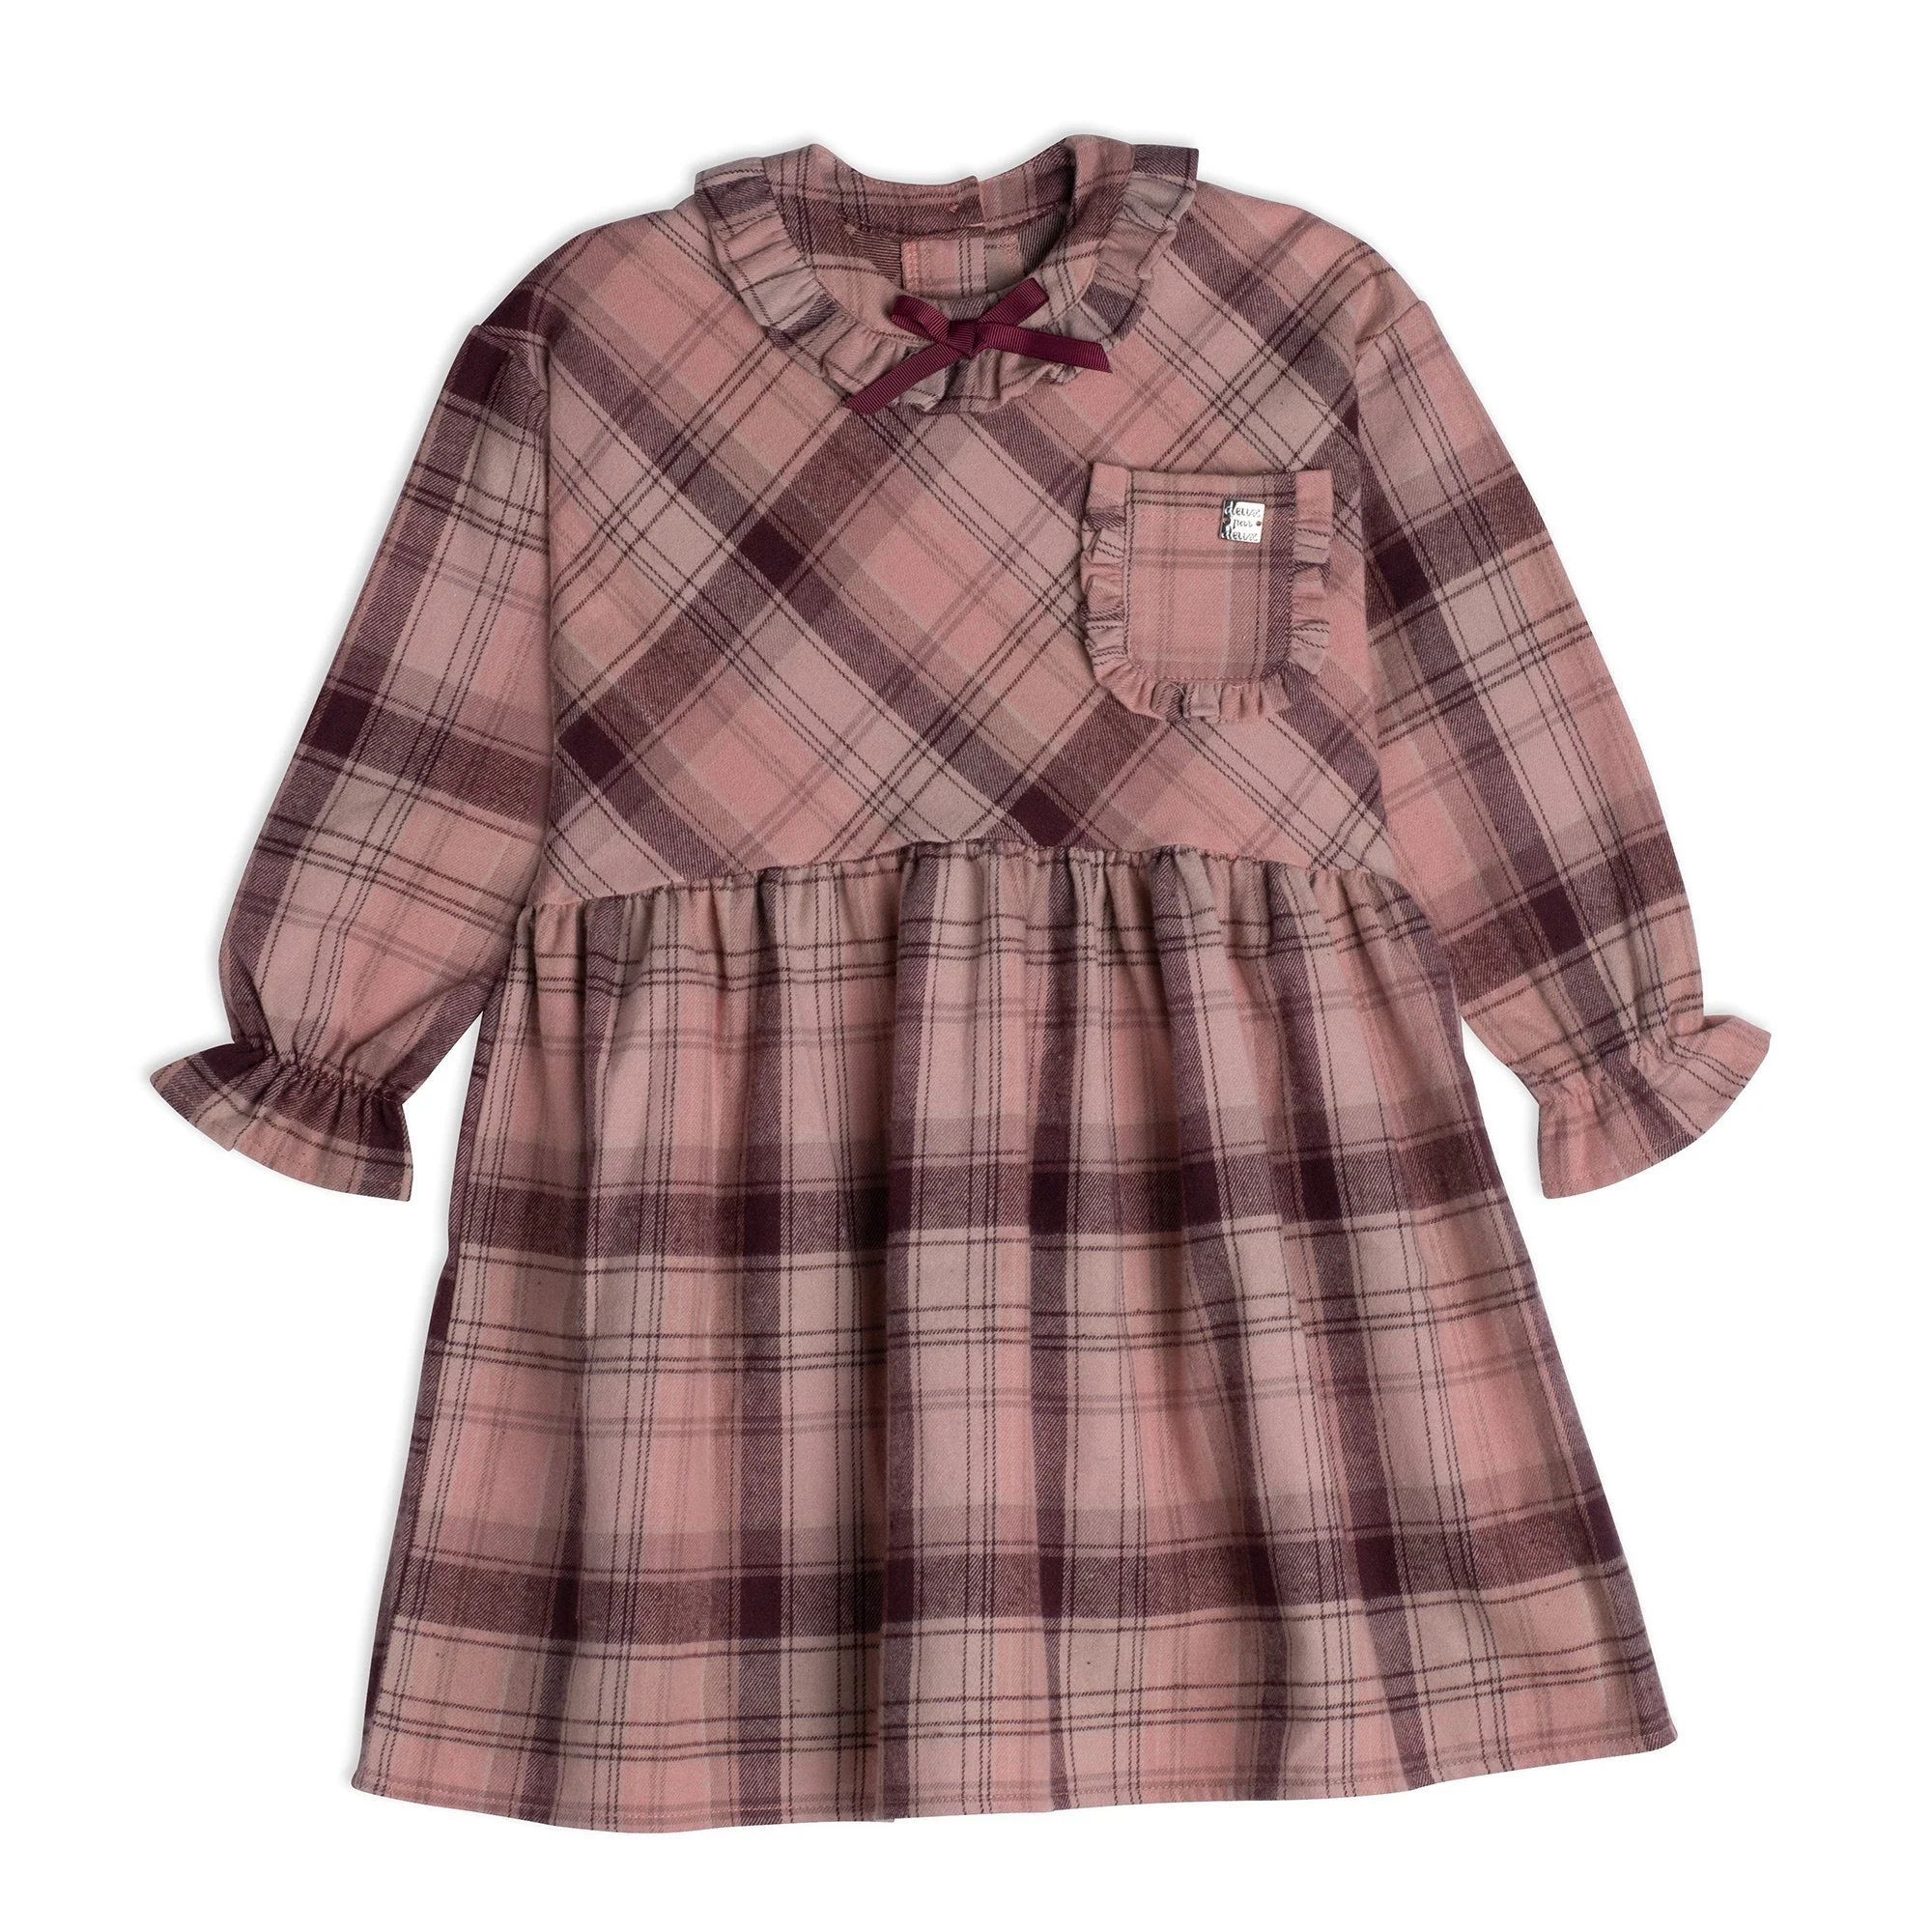 Long Sleeve Dress Pink And Burgundy Plaid | Deux par Deux Childrens Designer Clothing